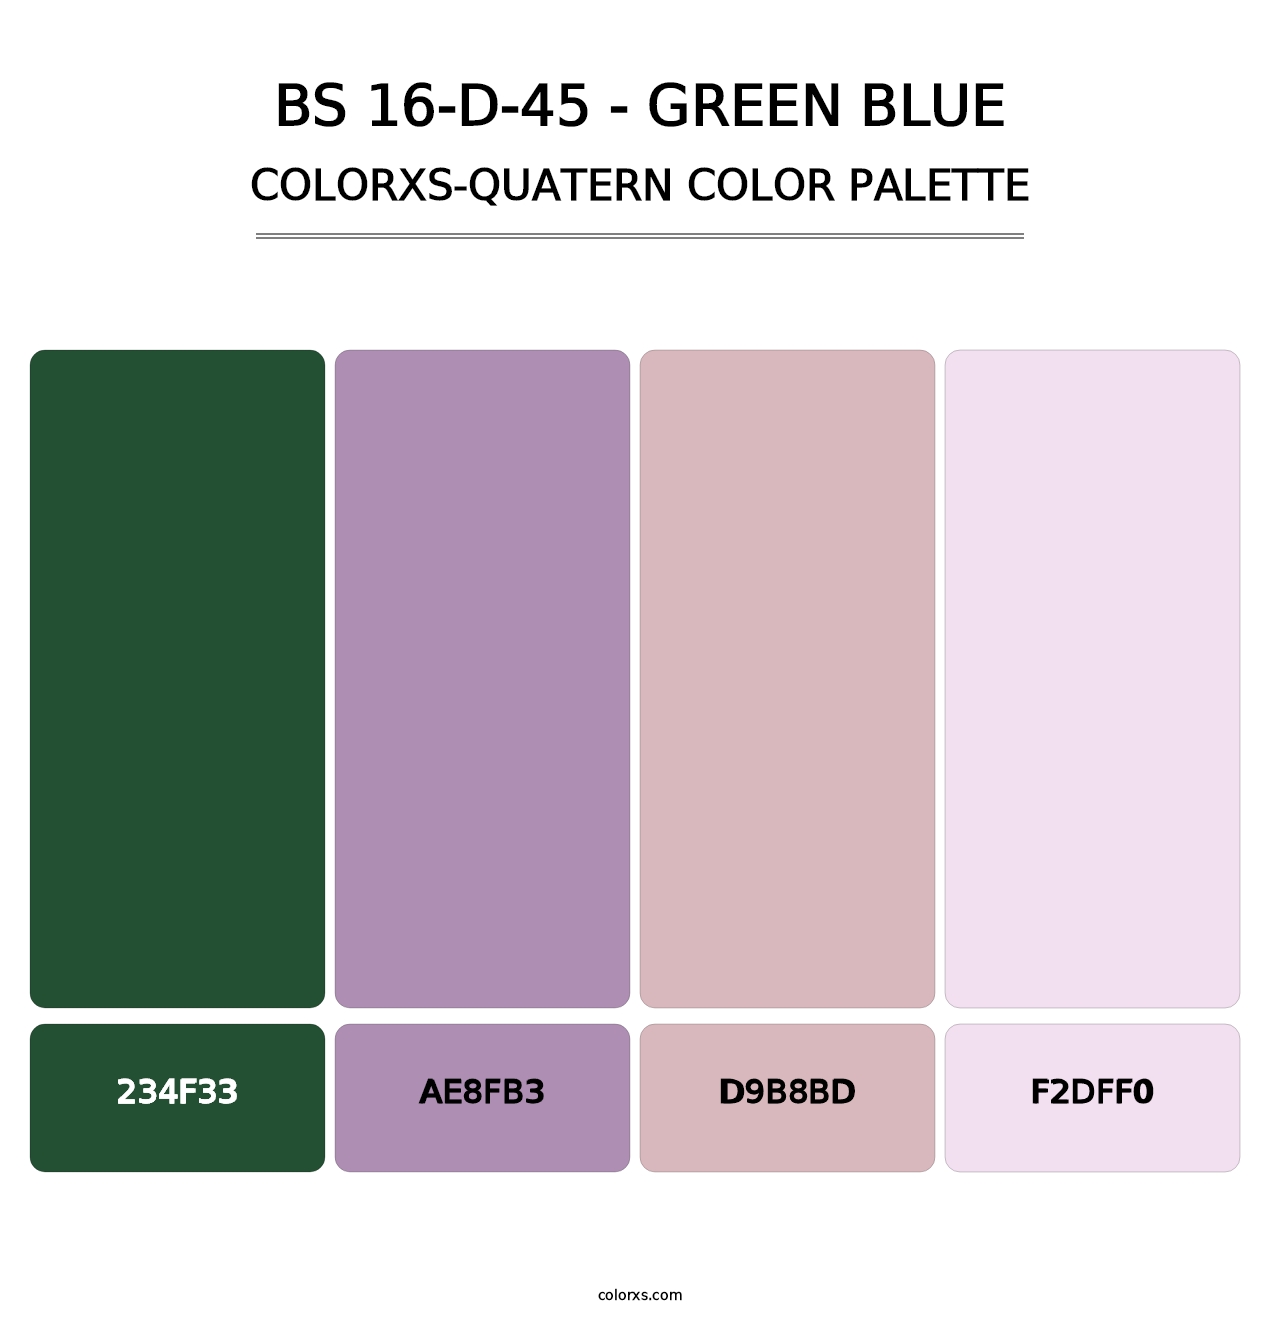 BS 16-D-45 - Green Blue - Colorxs Quatern Palette